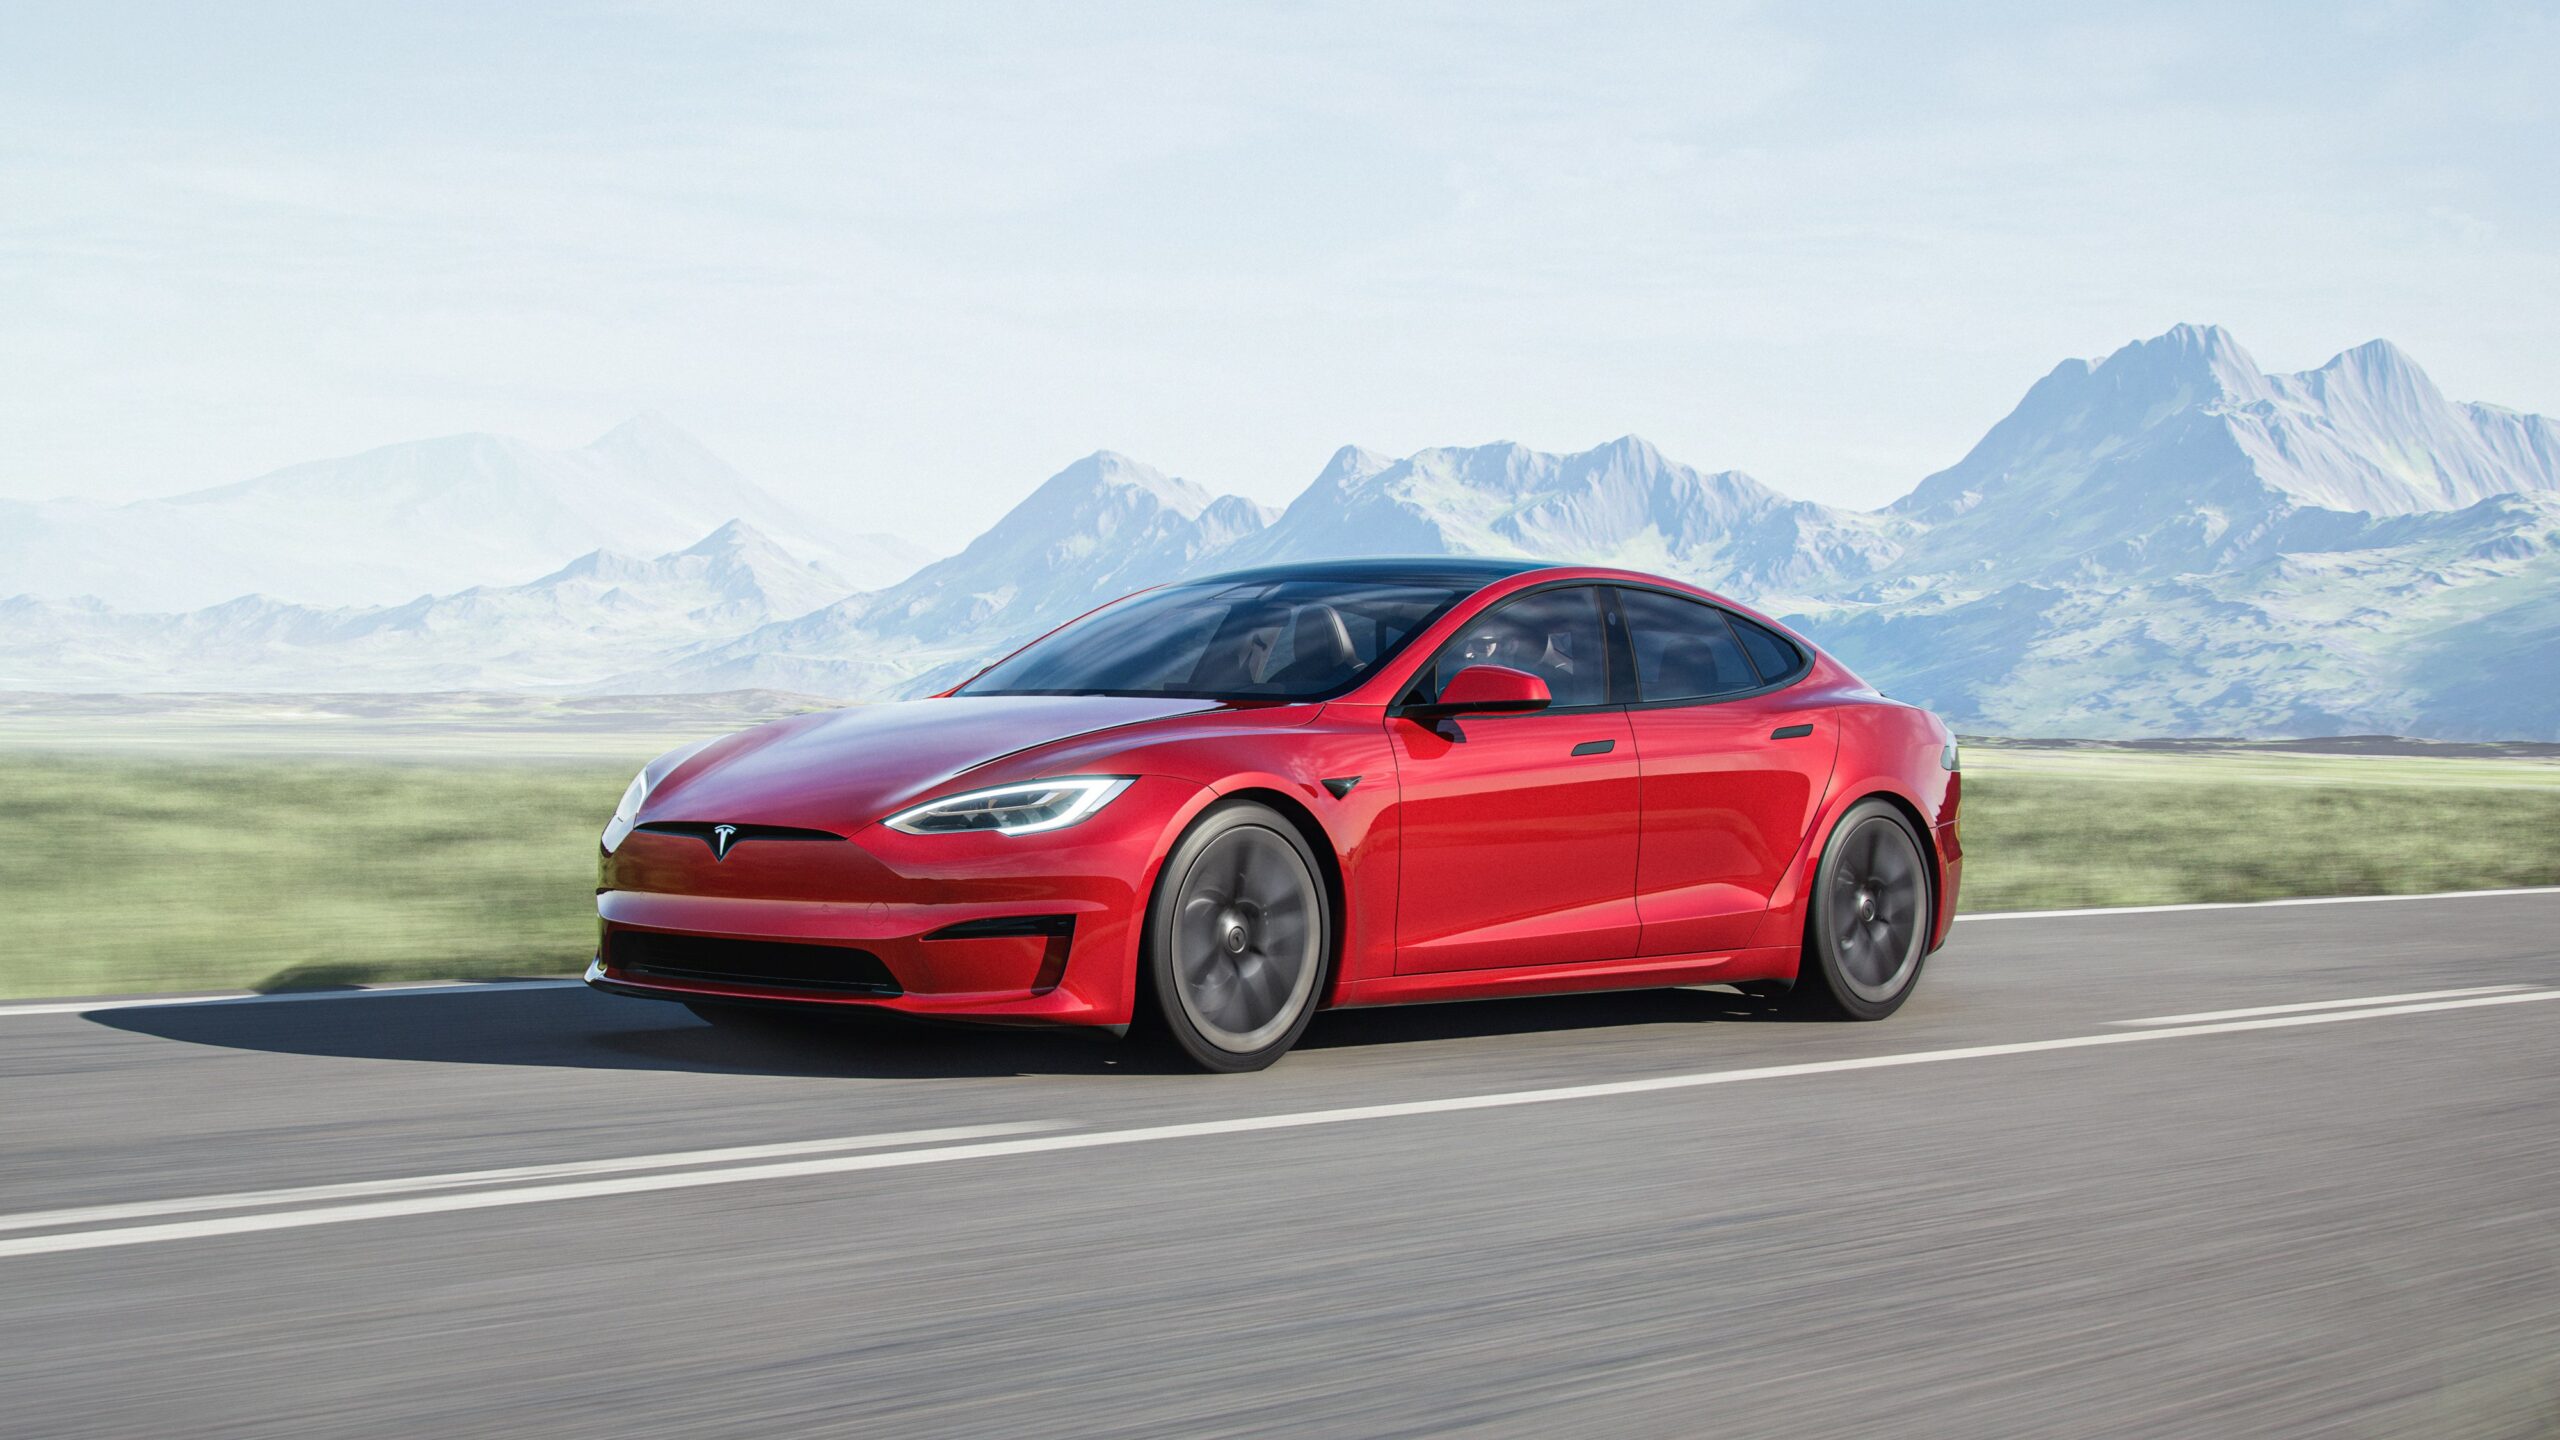 Tesla Model S Plaid : un dragster électrique en vente libre